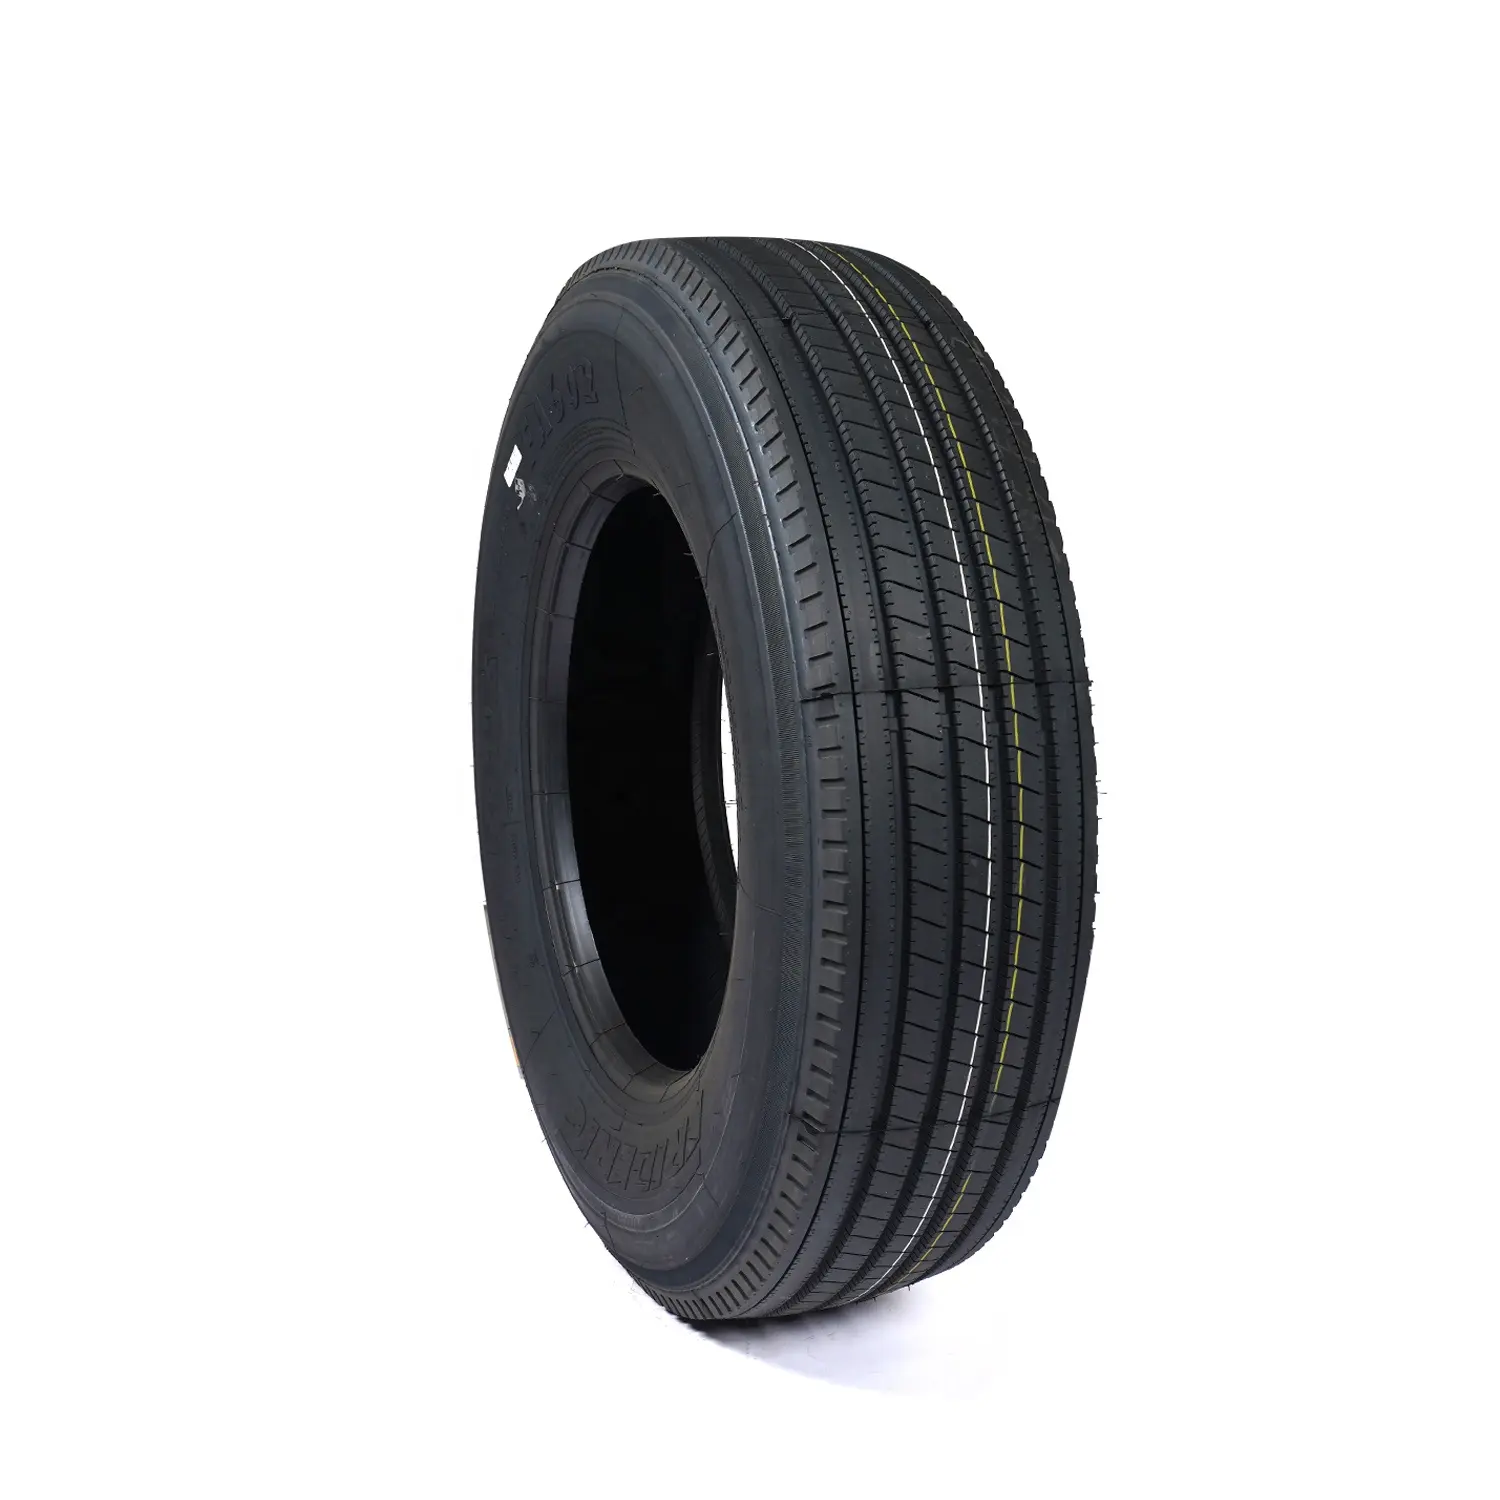 중국 제조업체 295/75r22.5 315/80R22.5 싼 가격 타이어 타이어 새로운 브랜드 도매 트럭 타이어